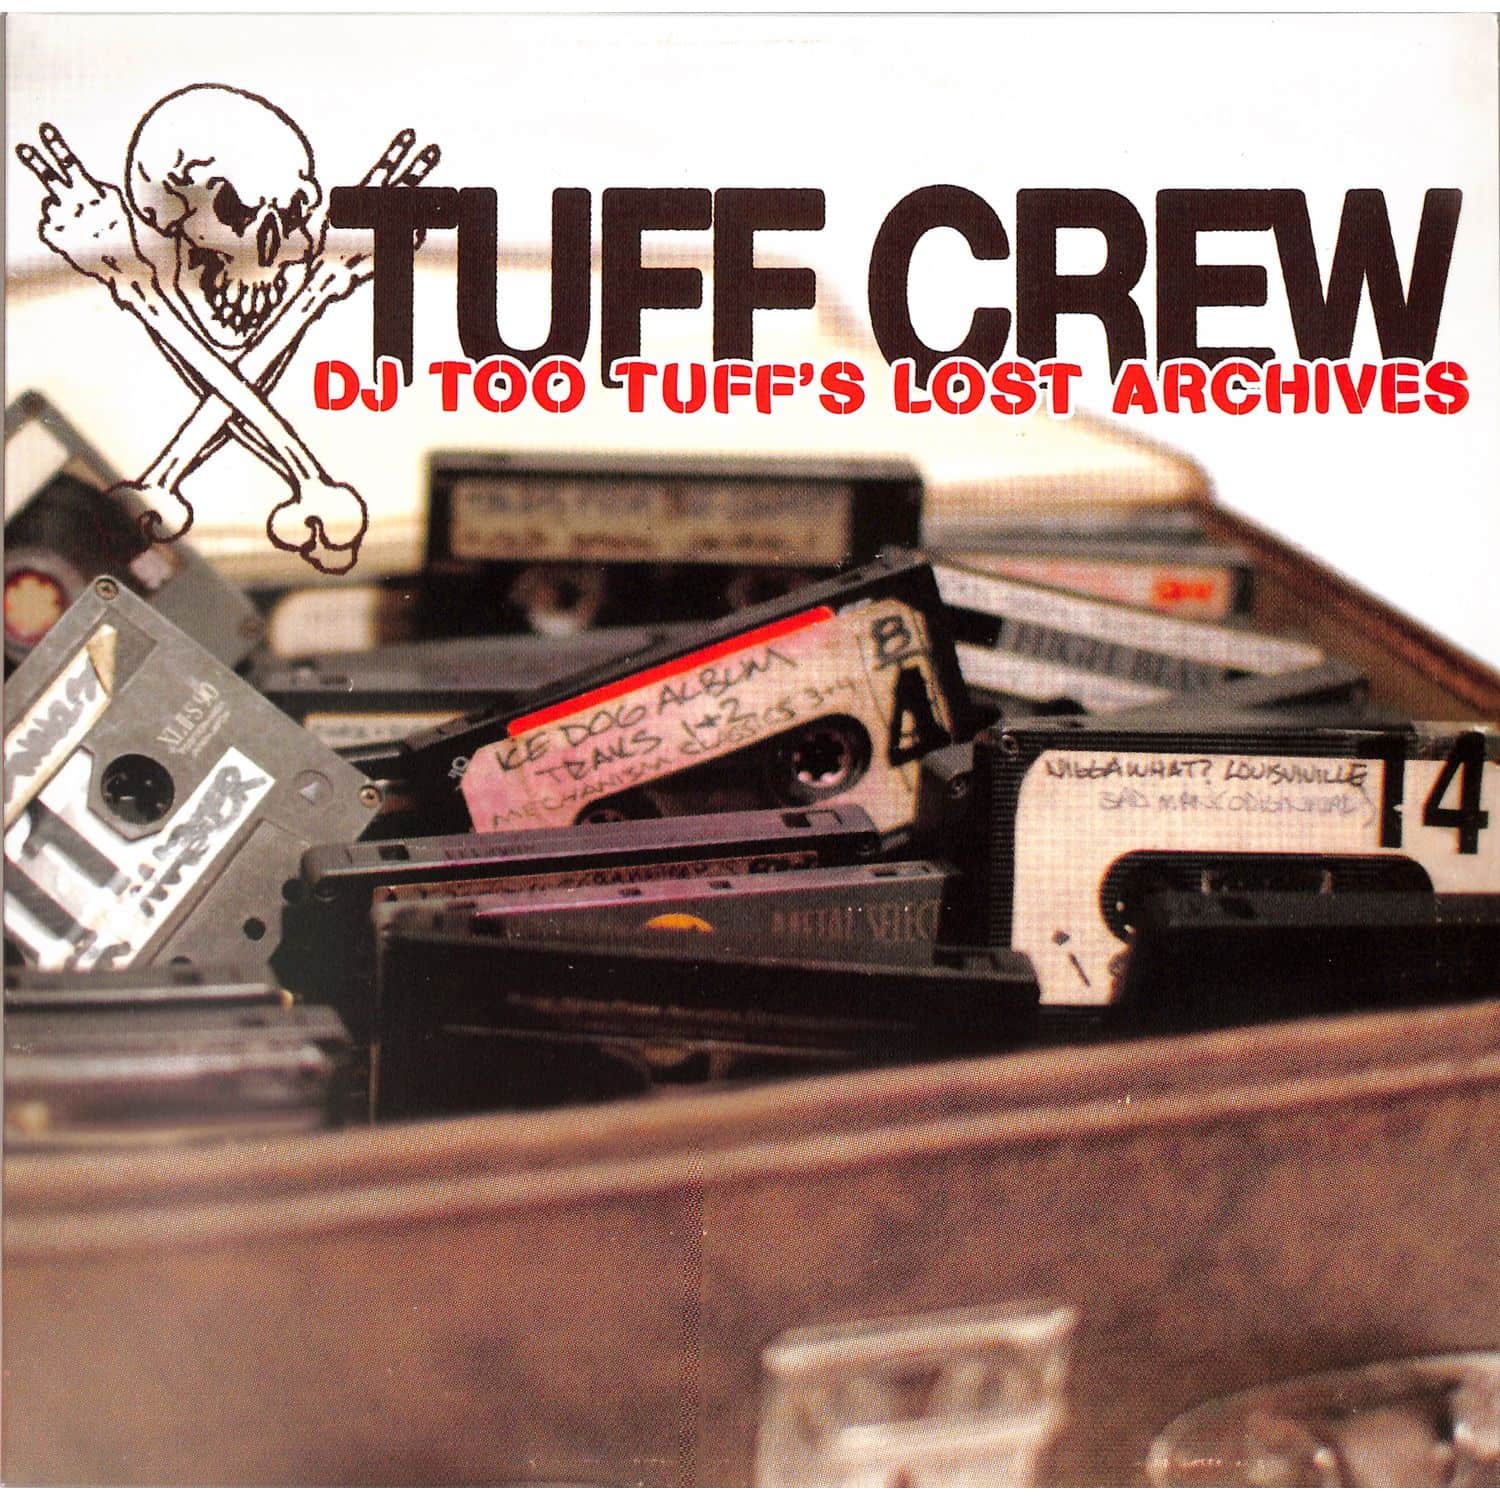 Tuff Crew - DJ TOO TUFFS THE LOST ARCHIVES 